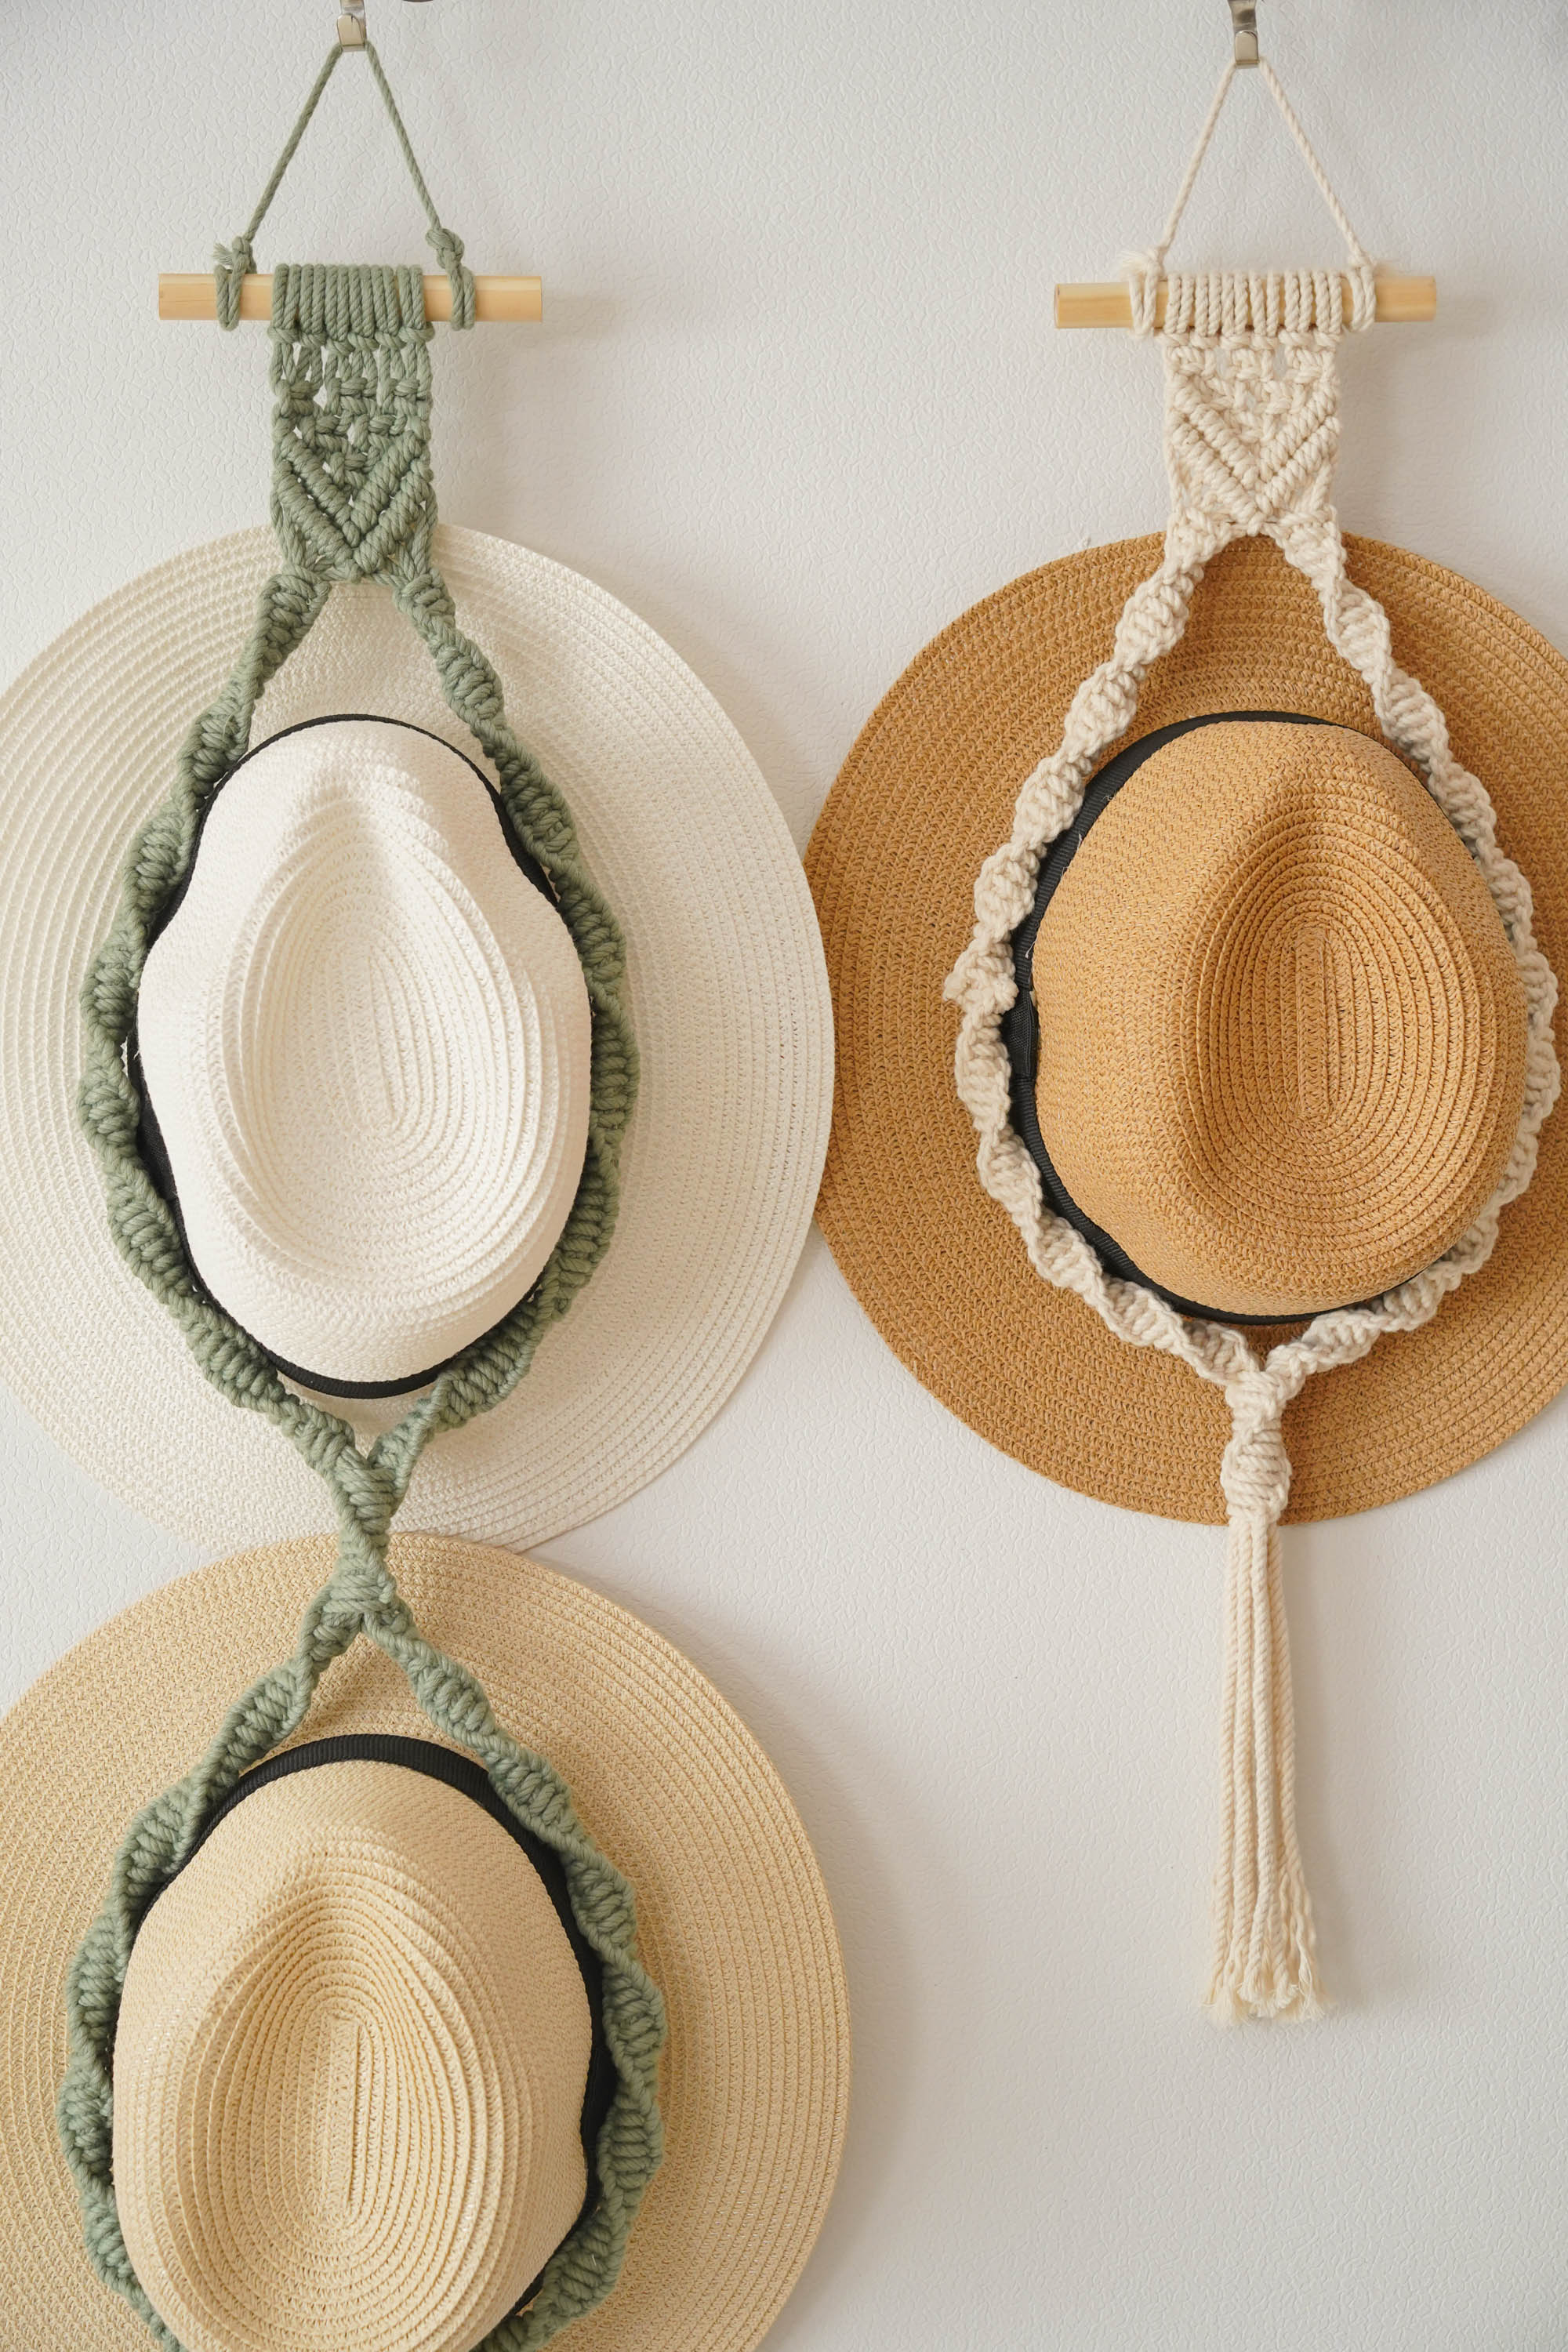 Macrame Hat Hanger Patterns for Boho Hat Storage